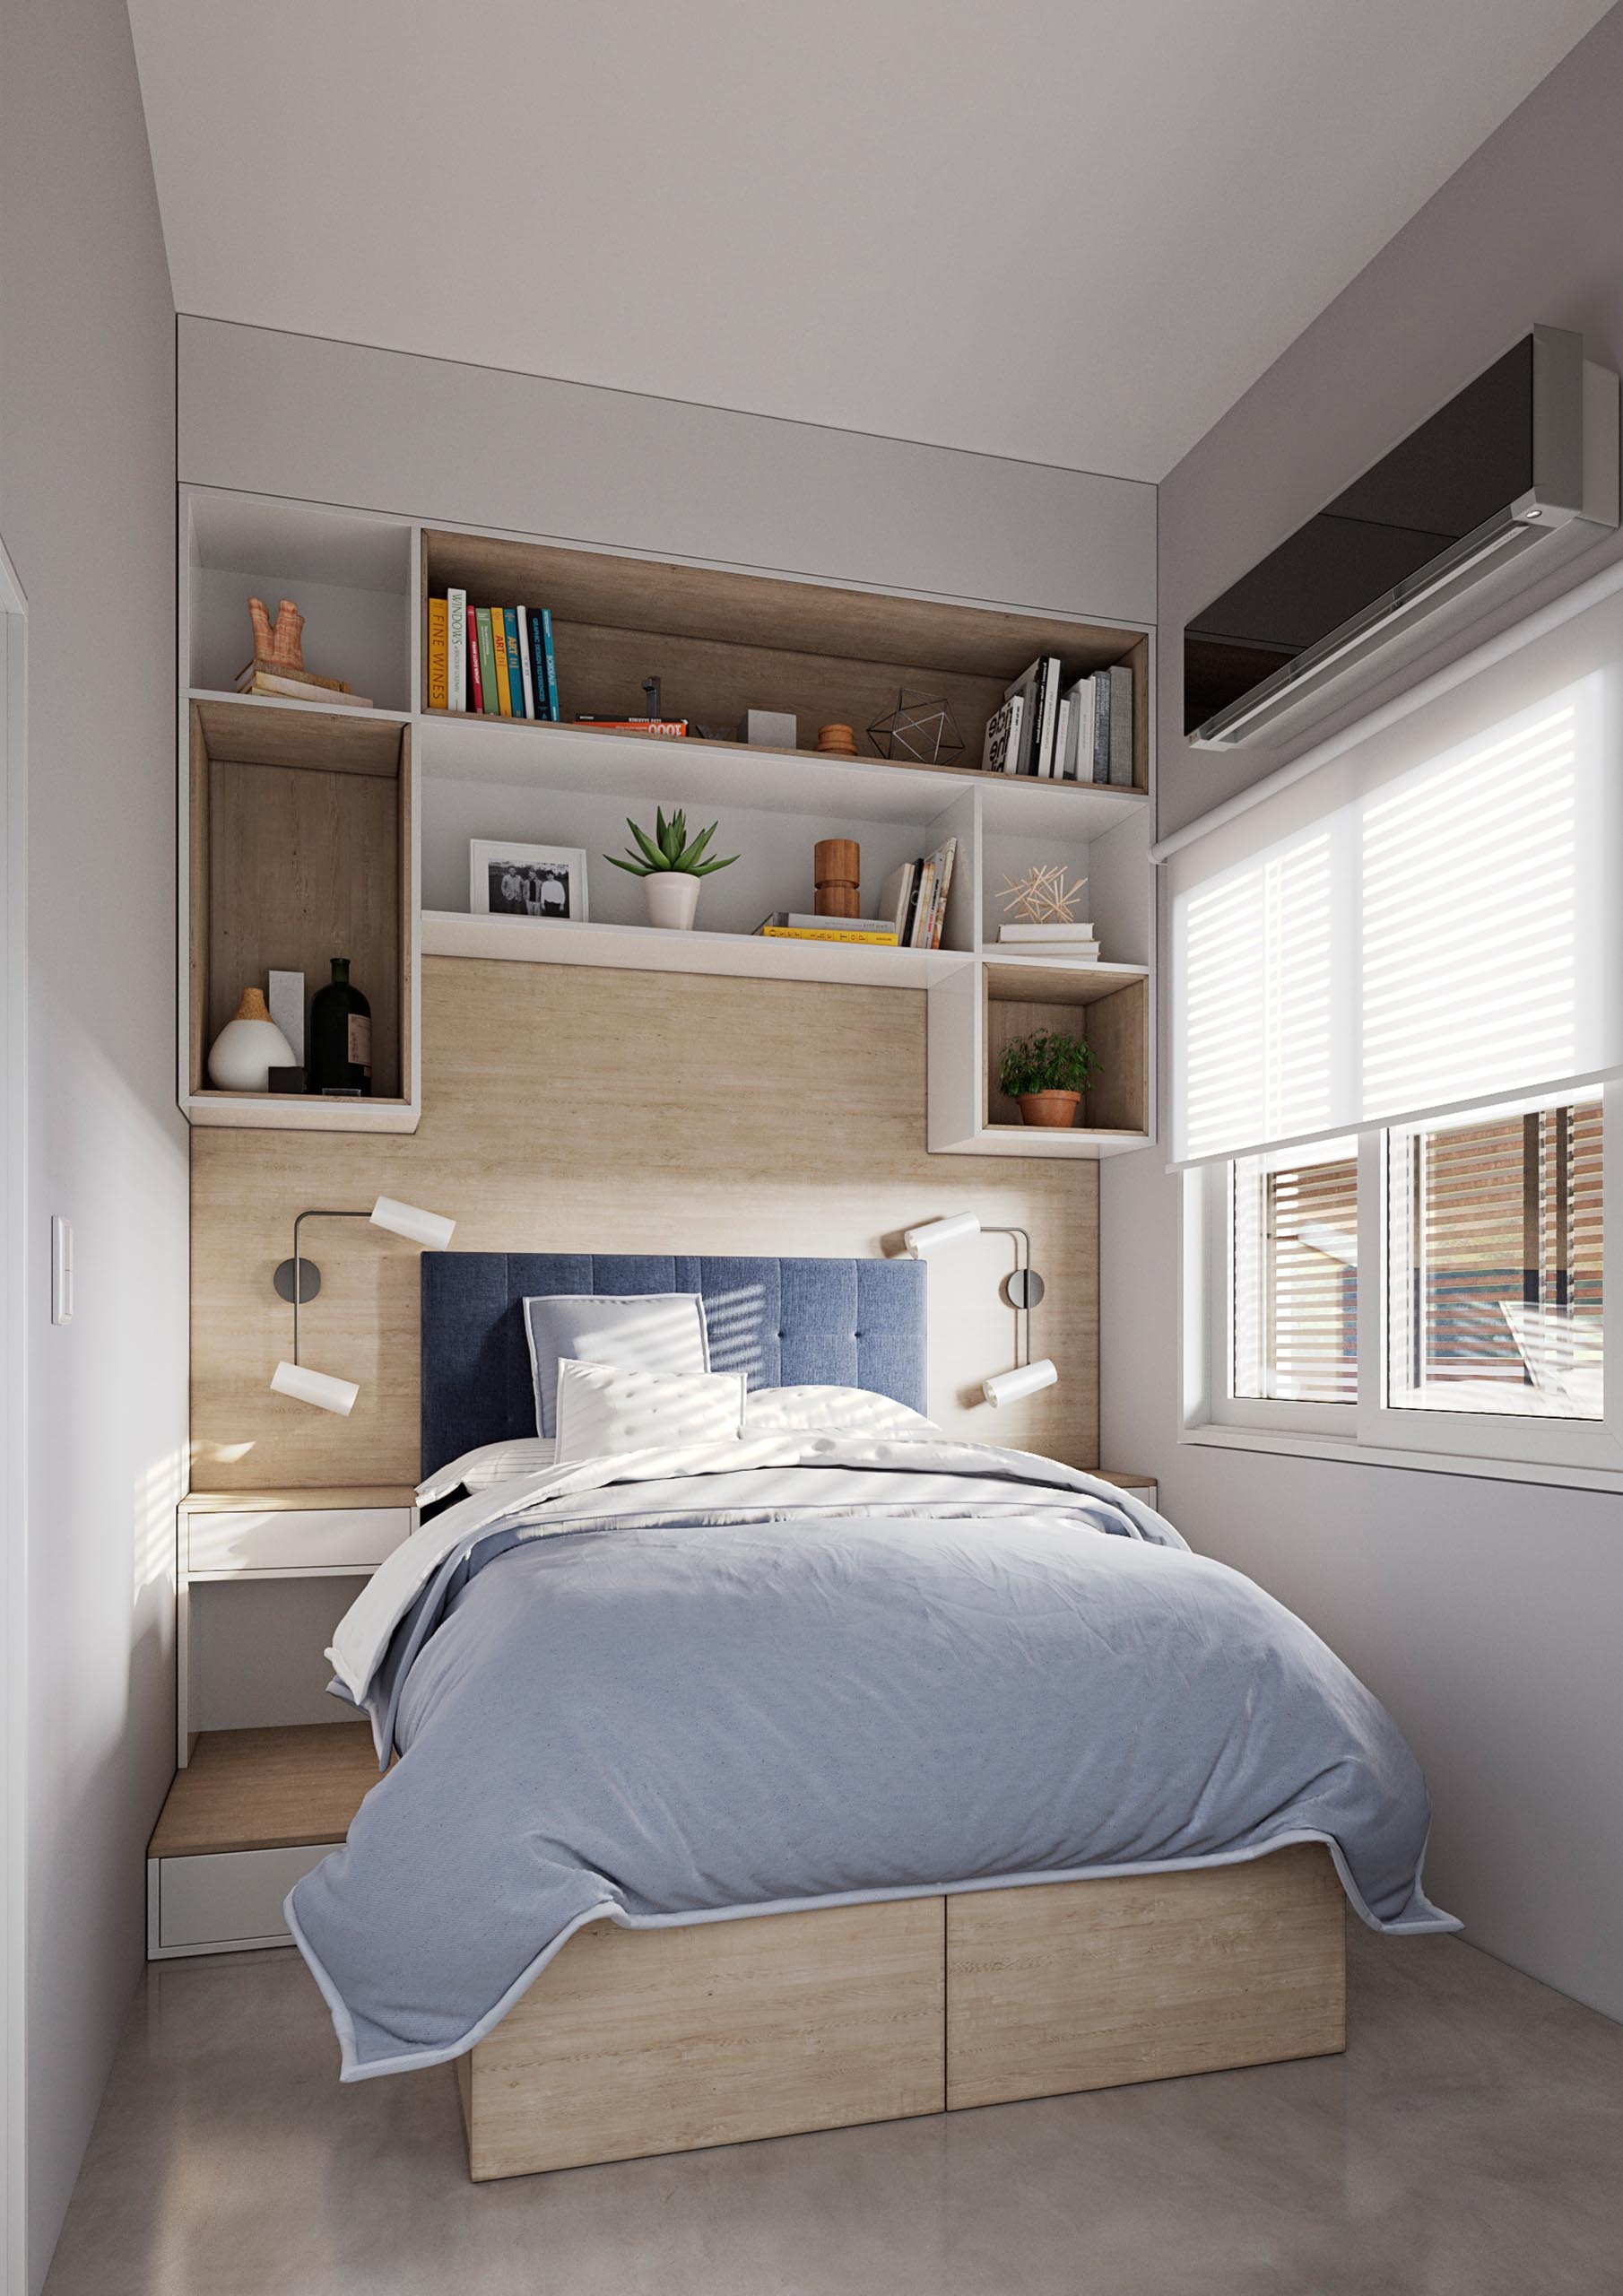 Крошечная домашняя спальня с деревянными элементами, белыми шкафами и местом для хранения вещей под кроватью.